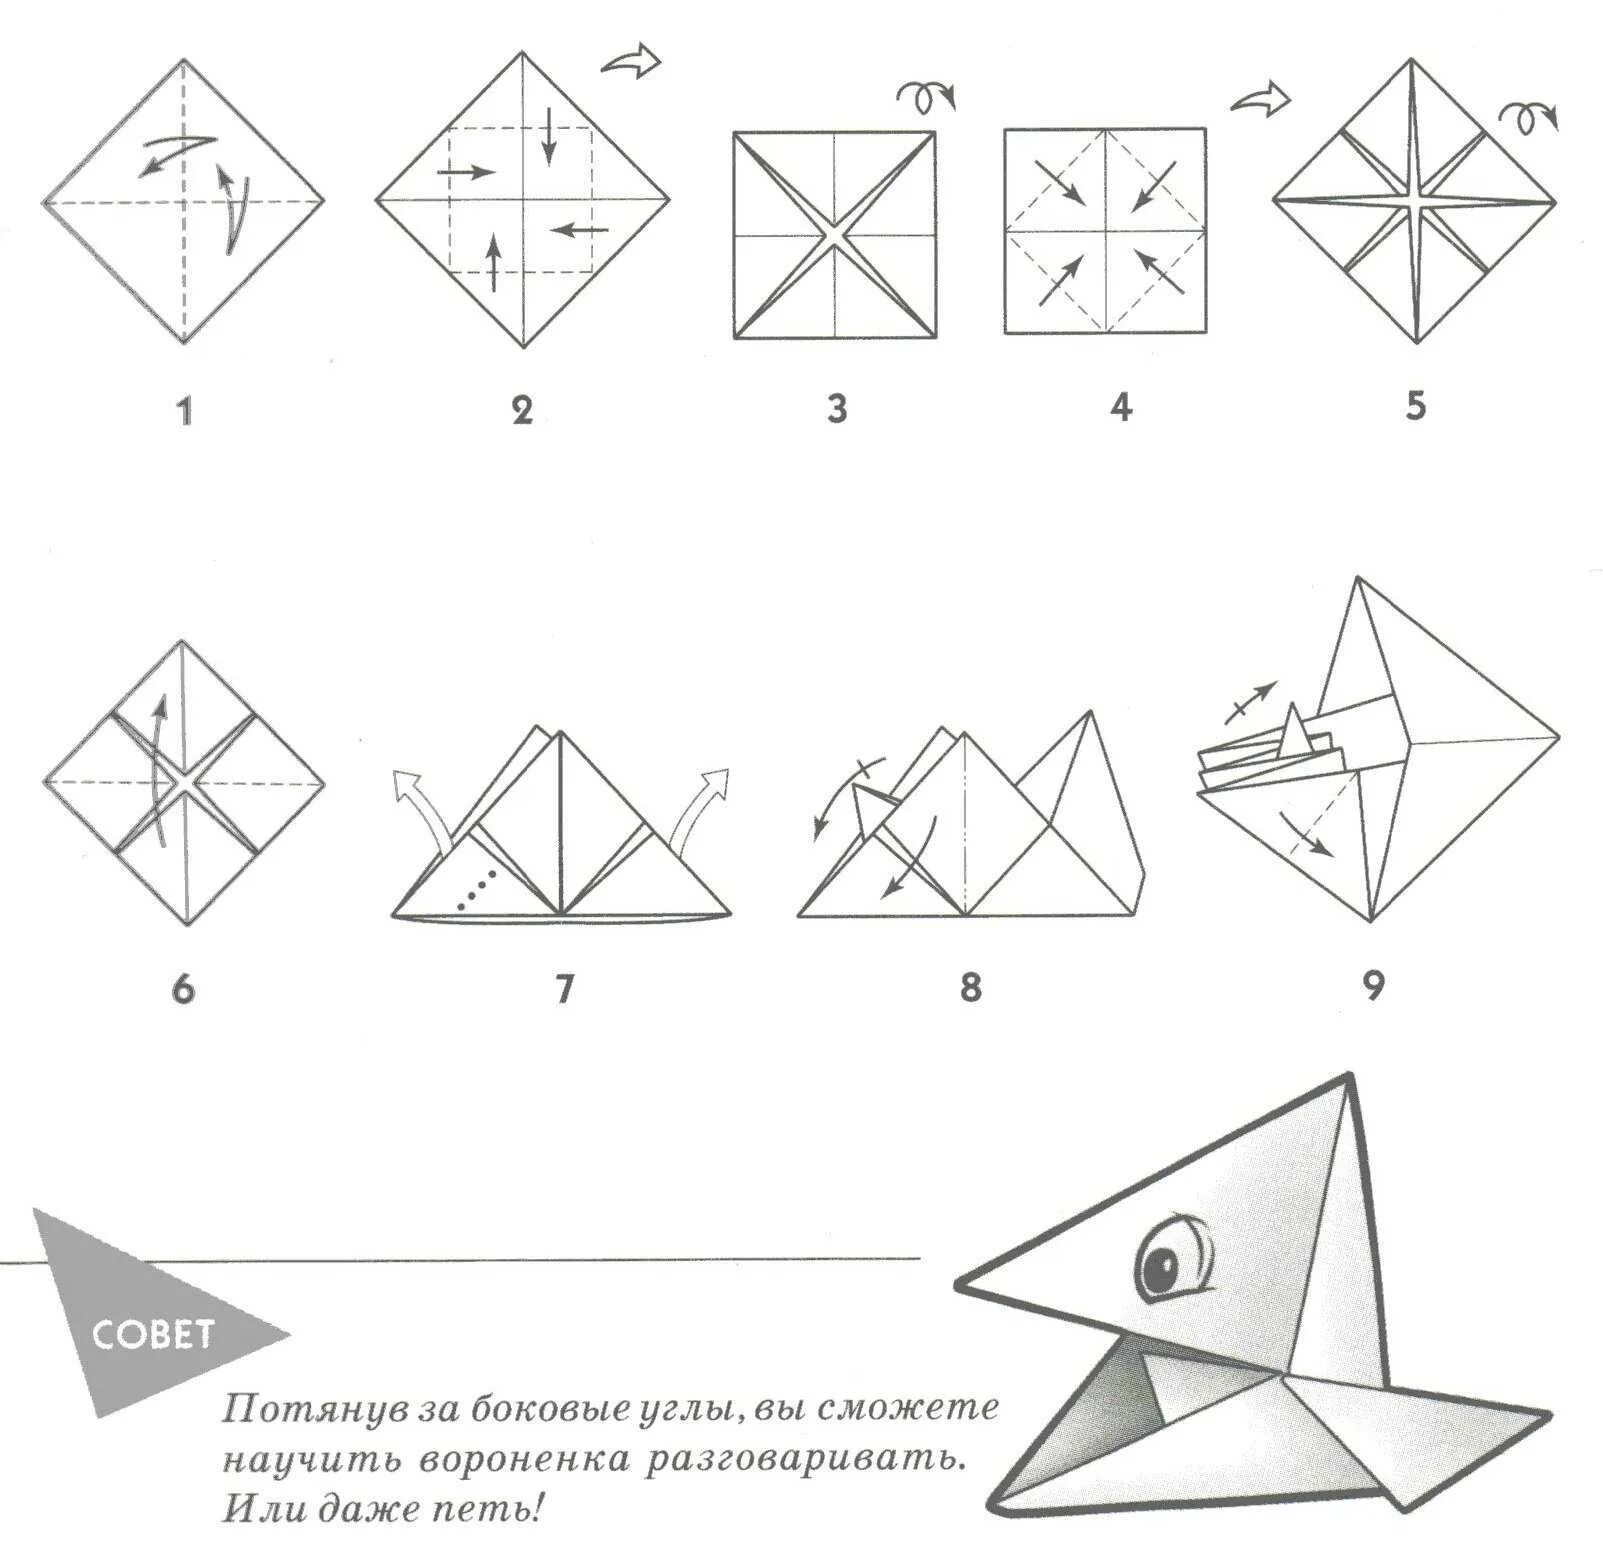 Инструкция как сделать из бумаги. Поделка оригами из бумаги для начинающих пошагово. Оригами из бумаги для начинающих схемы пошагово. Поделки из бумаги схема складывания. Оригами из бумаги без клея схемы.